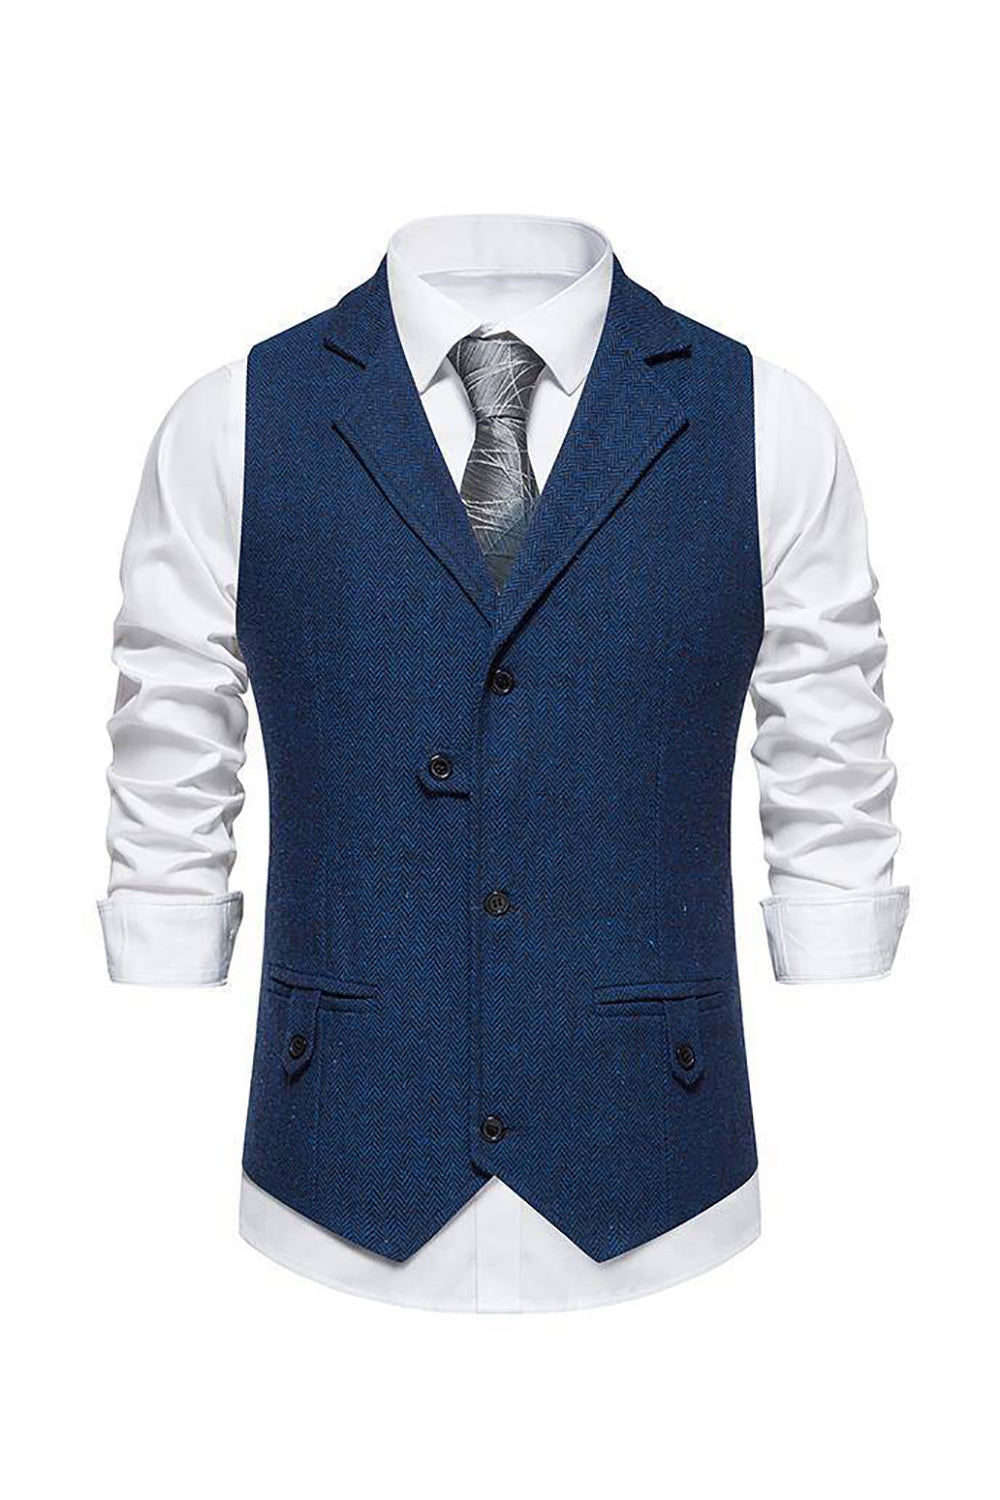 Retro Lapel Single Breasted Blue Men's Suit Vest